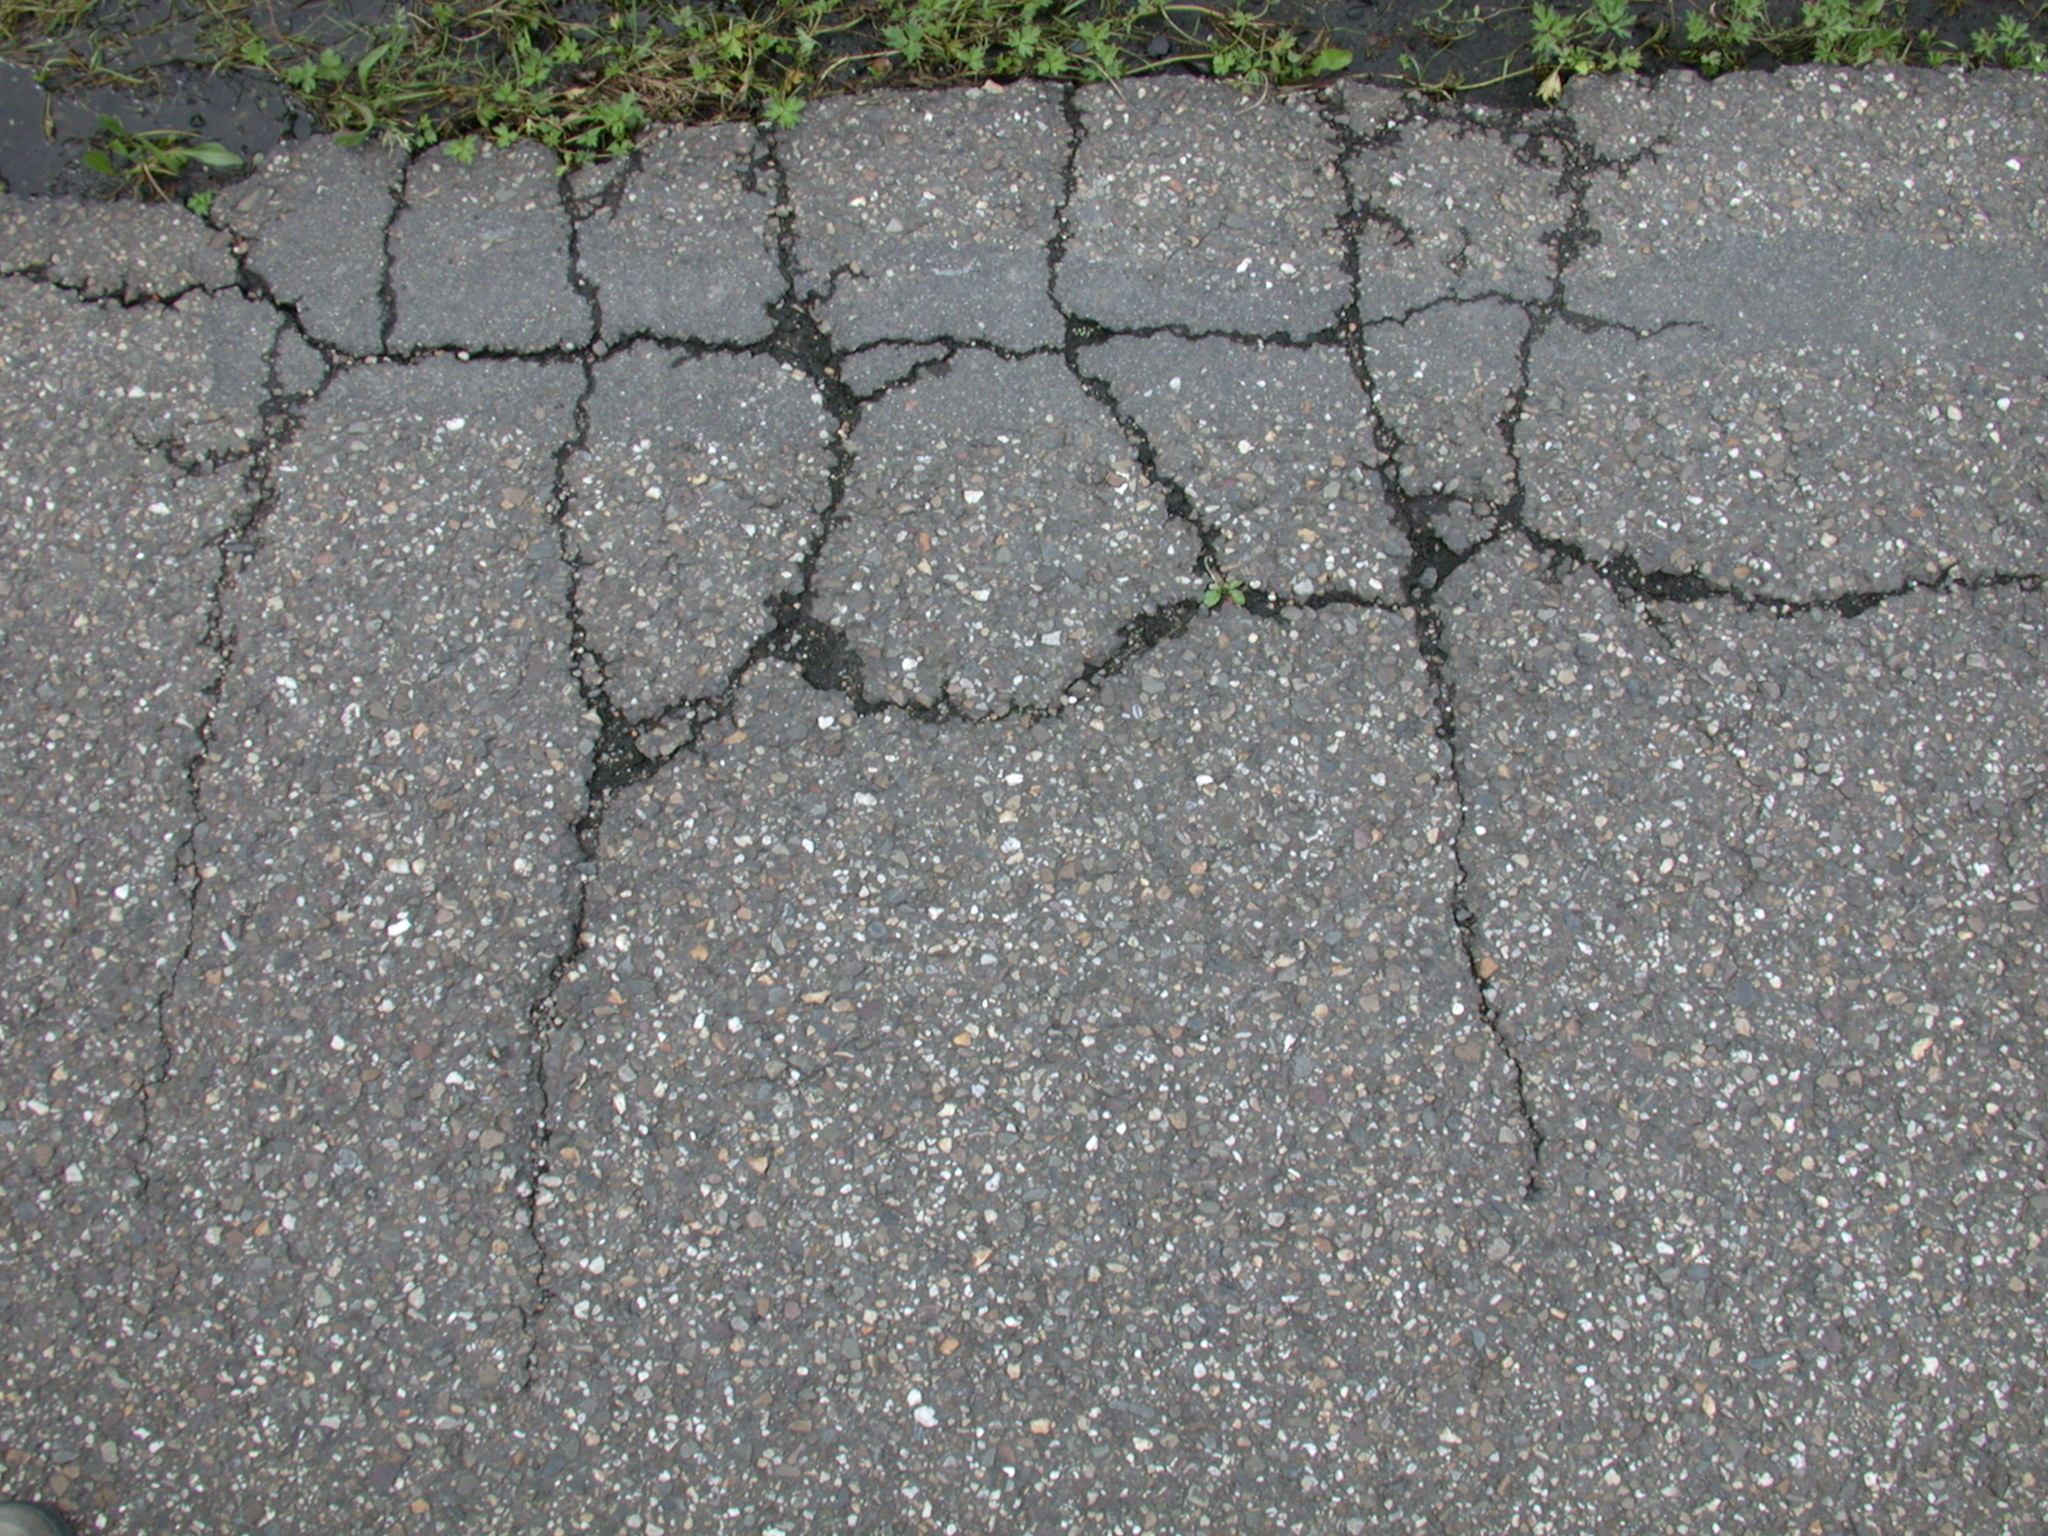 Image*After : textures : old asphalt tar cracked road